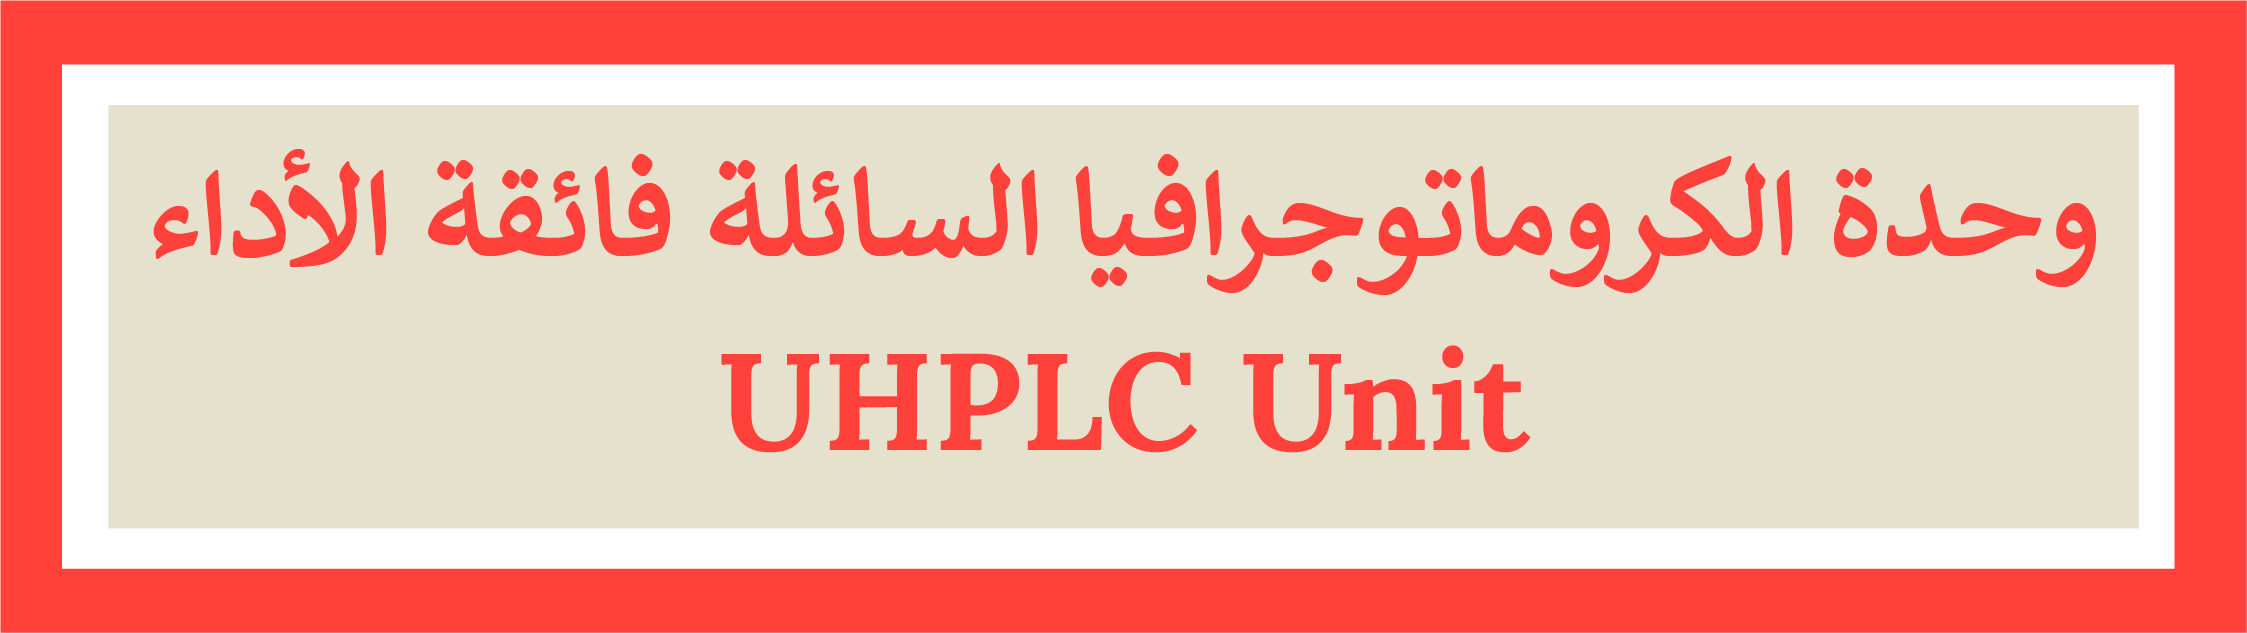 UHPLC Unit